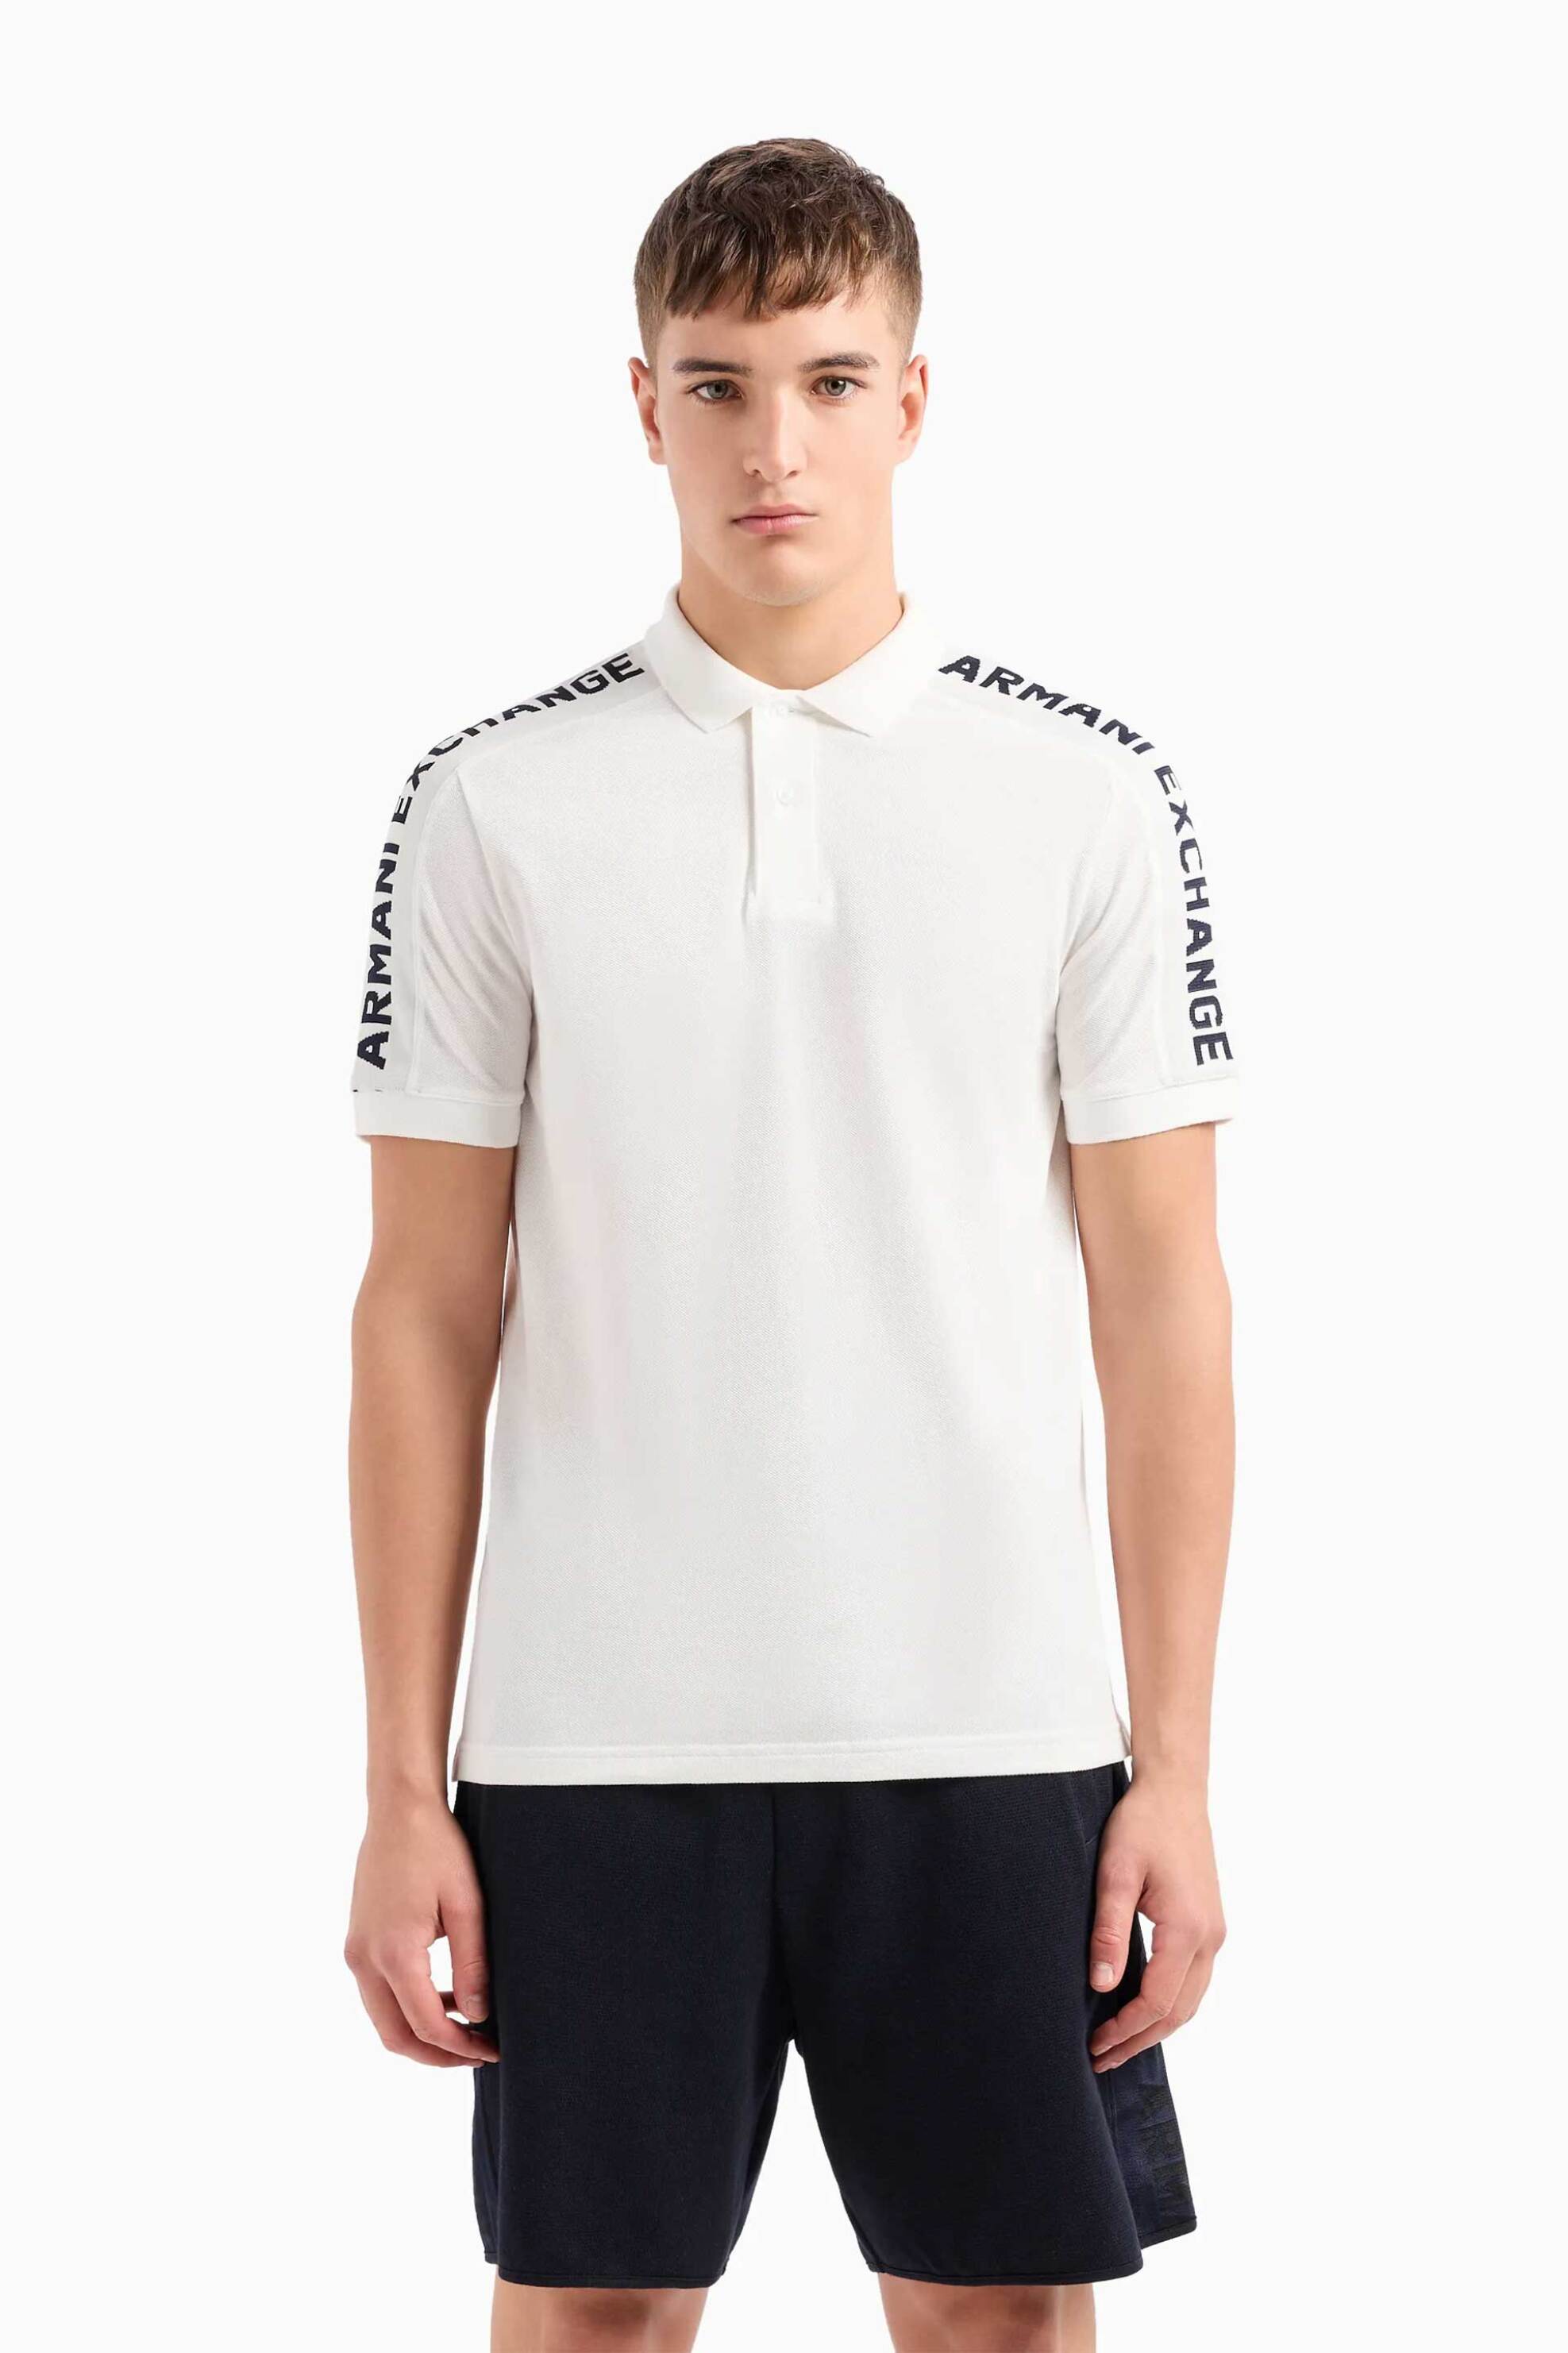 Ανδρική Μόδα > Ανδρικά Ρούχα > Ανδρικές Μπλούζες > Ανδρικές Μπλούζες Πολο Armani Exchange ανδρική πόλο μπλούζα πικέ με λογότυπο στους ώμους - 3DZFLAZJM5Z Λευκό